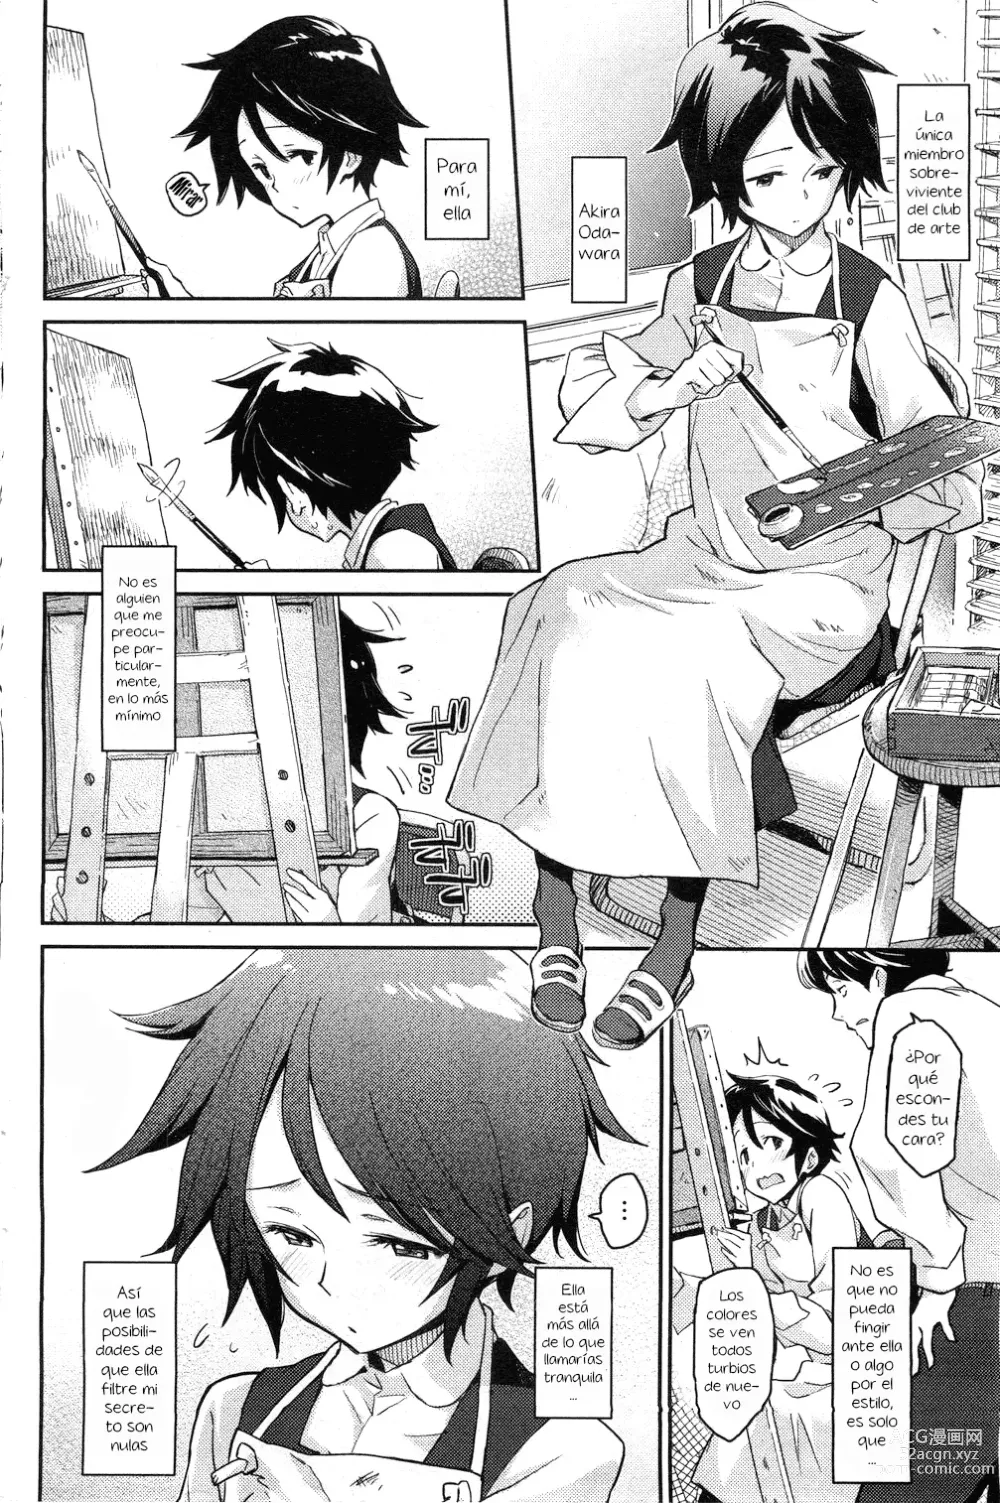 Page 4 of manga Spare Key